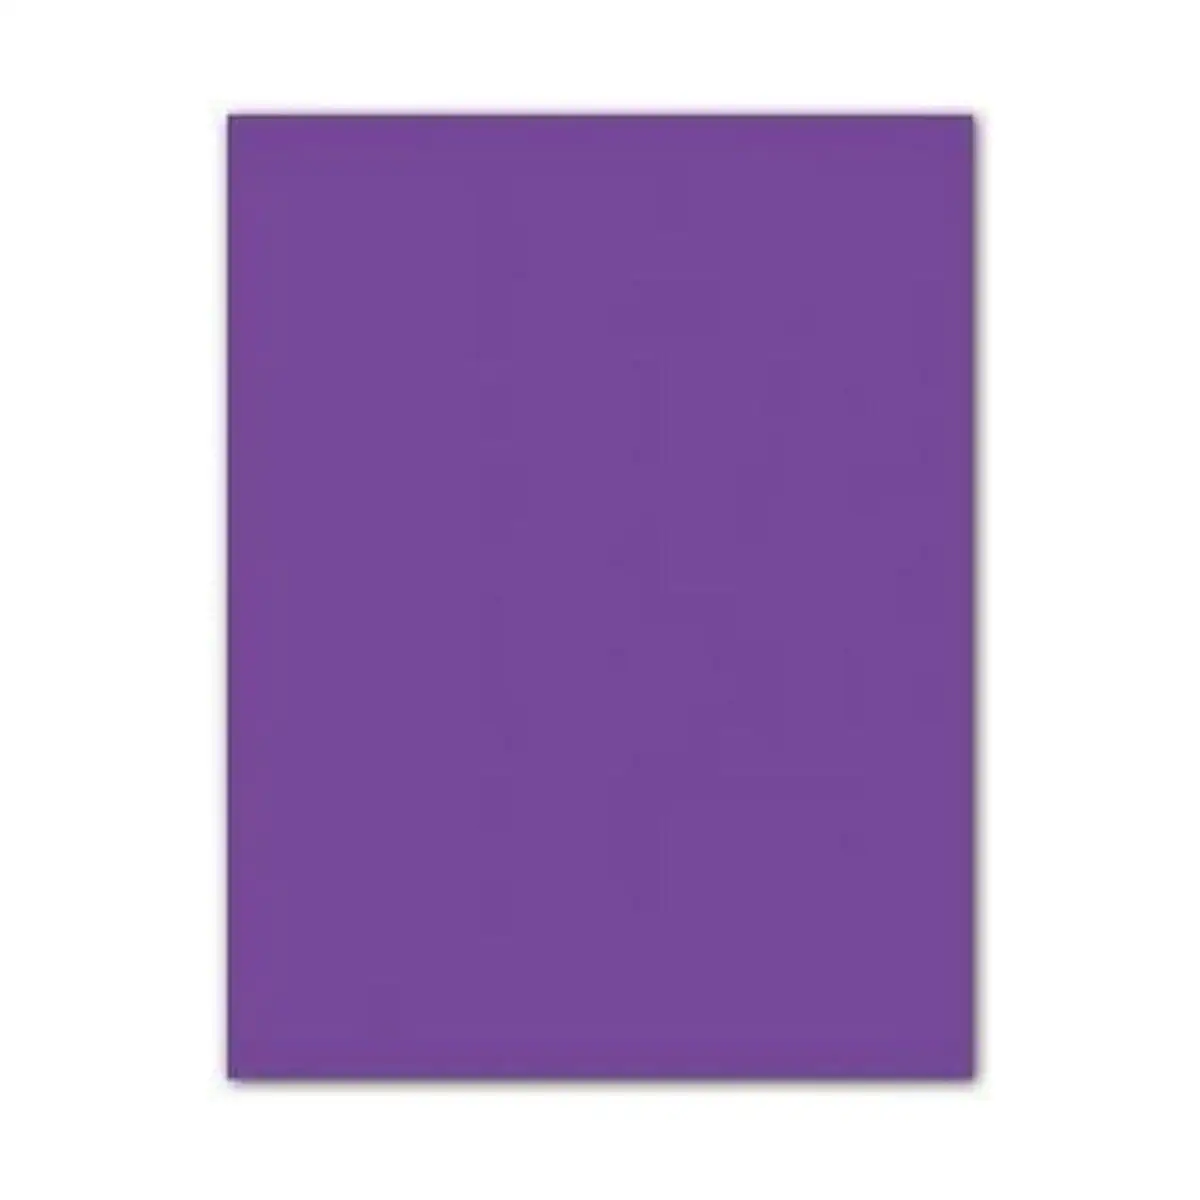 Papiers carton iris violet 185 g 50 x 65 cm 25 unites _5379. Bienvenue chez DIAYTAR SENEGAL - Où Choisir est un Voyage. Plongez dans notre plateforme en ligne pour trouver des produits qui ajoutent de la couleur et de la texture à votre quotidien.